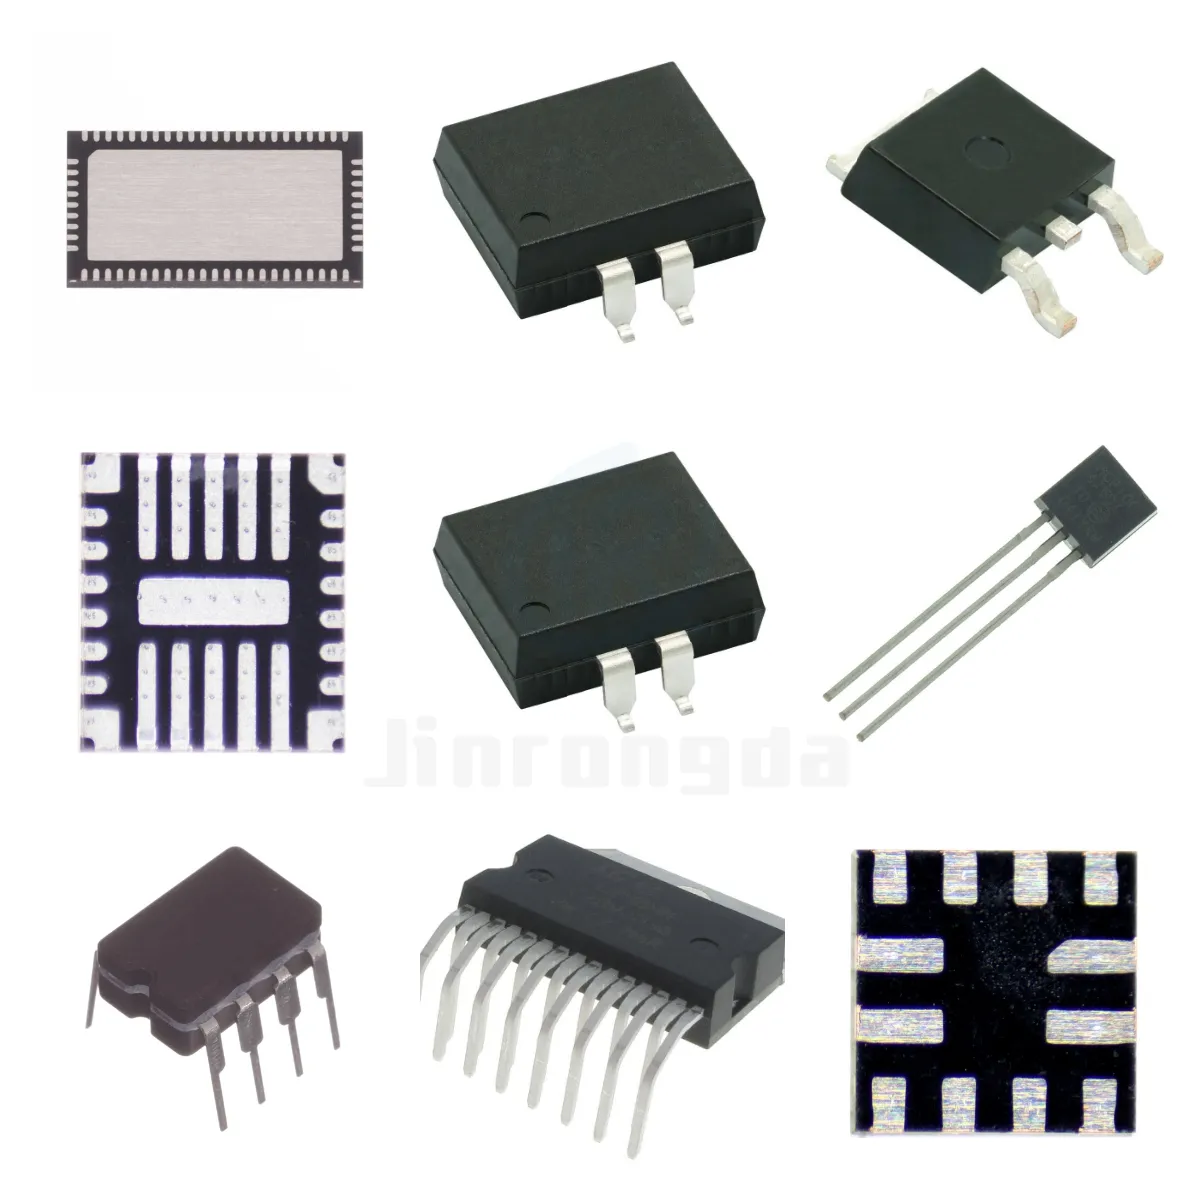 PIC12F675-I/SN 12F675-I/P Einzelchip-Mikro computer Preis kann diskutiert werden Support BOM-Konfiguration blatt